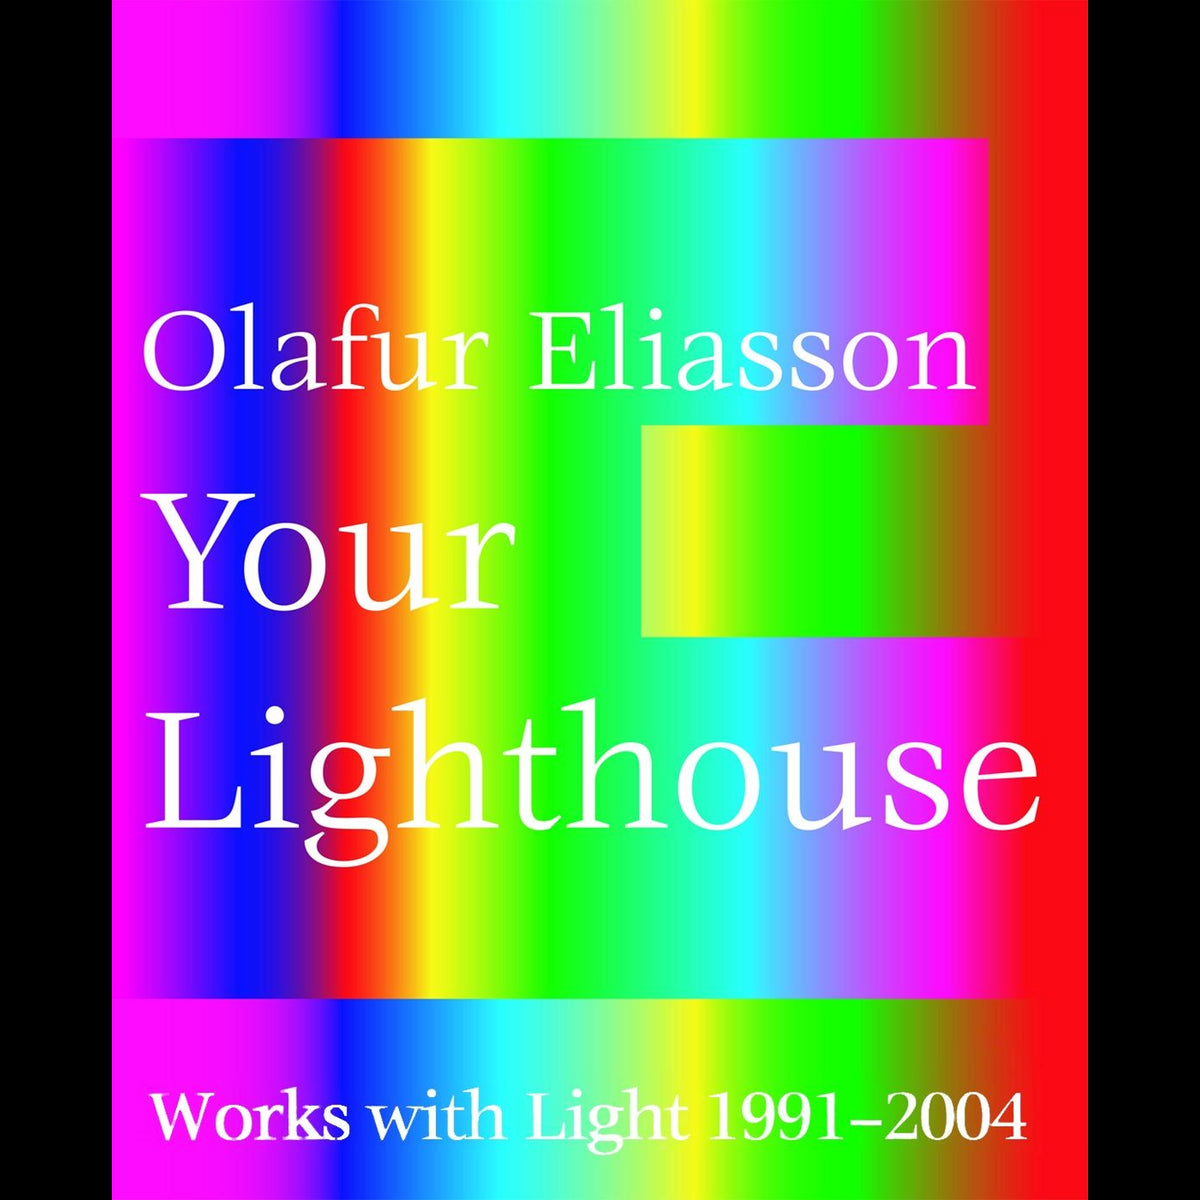 Coverbild Olafur Eliasson